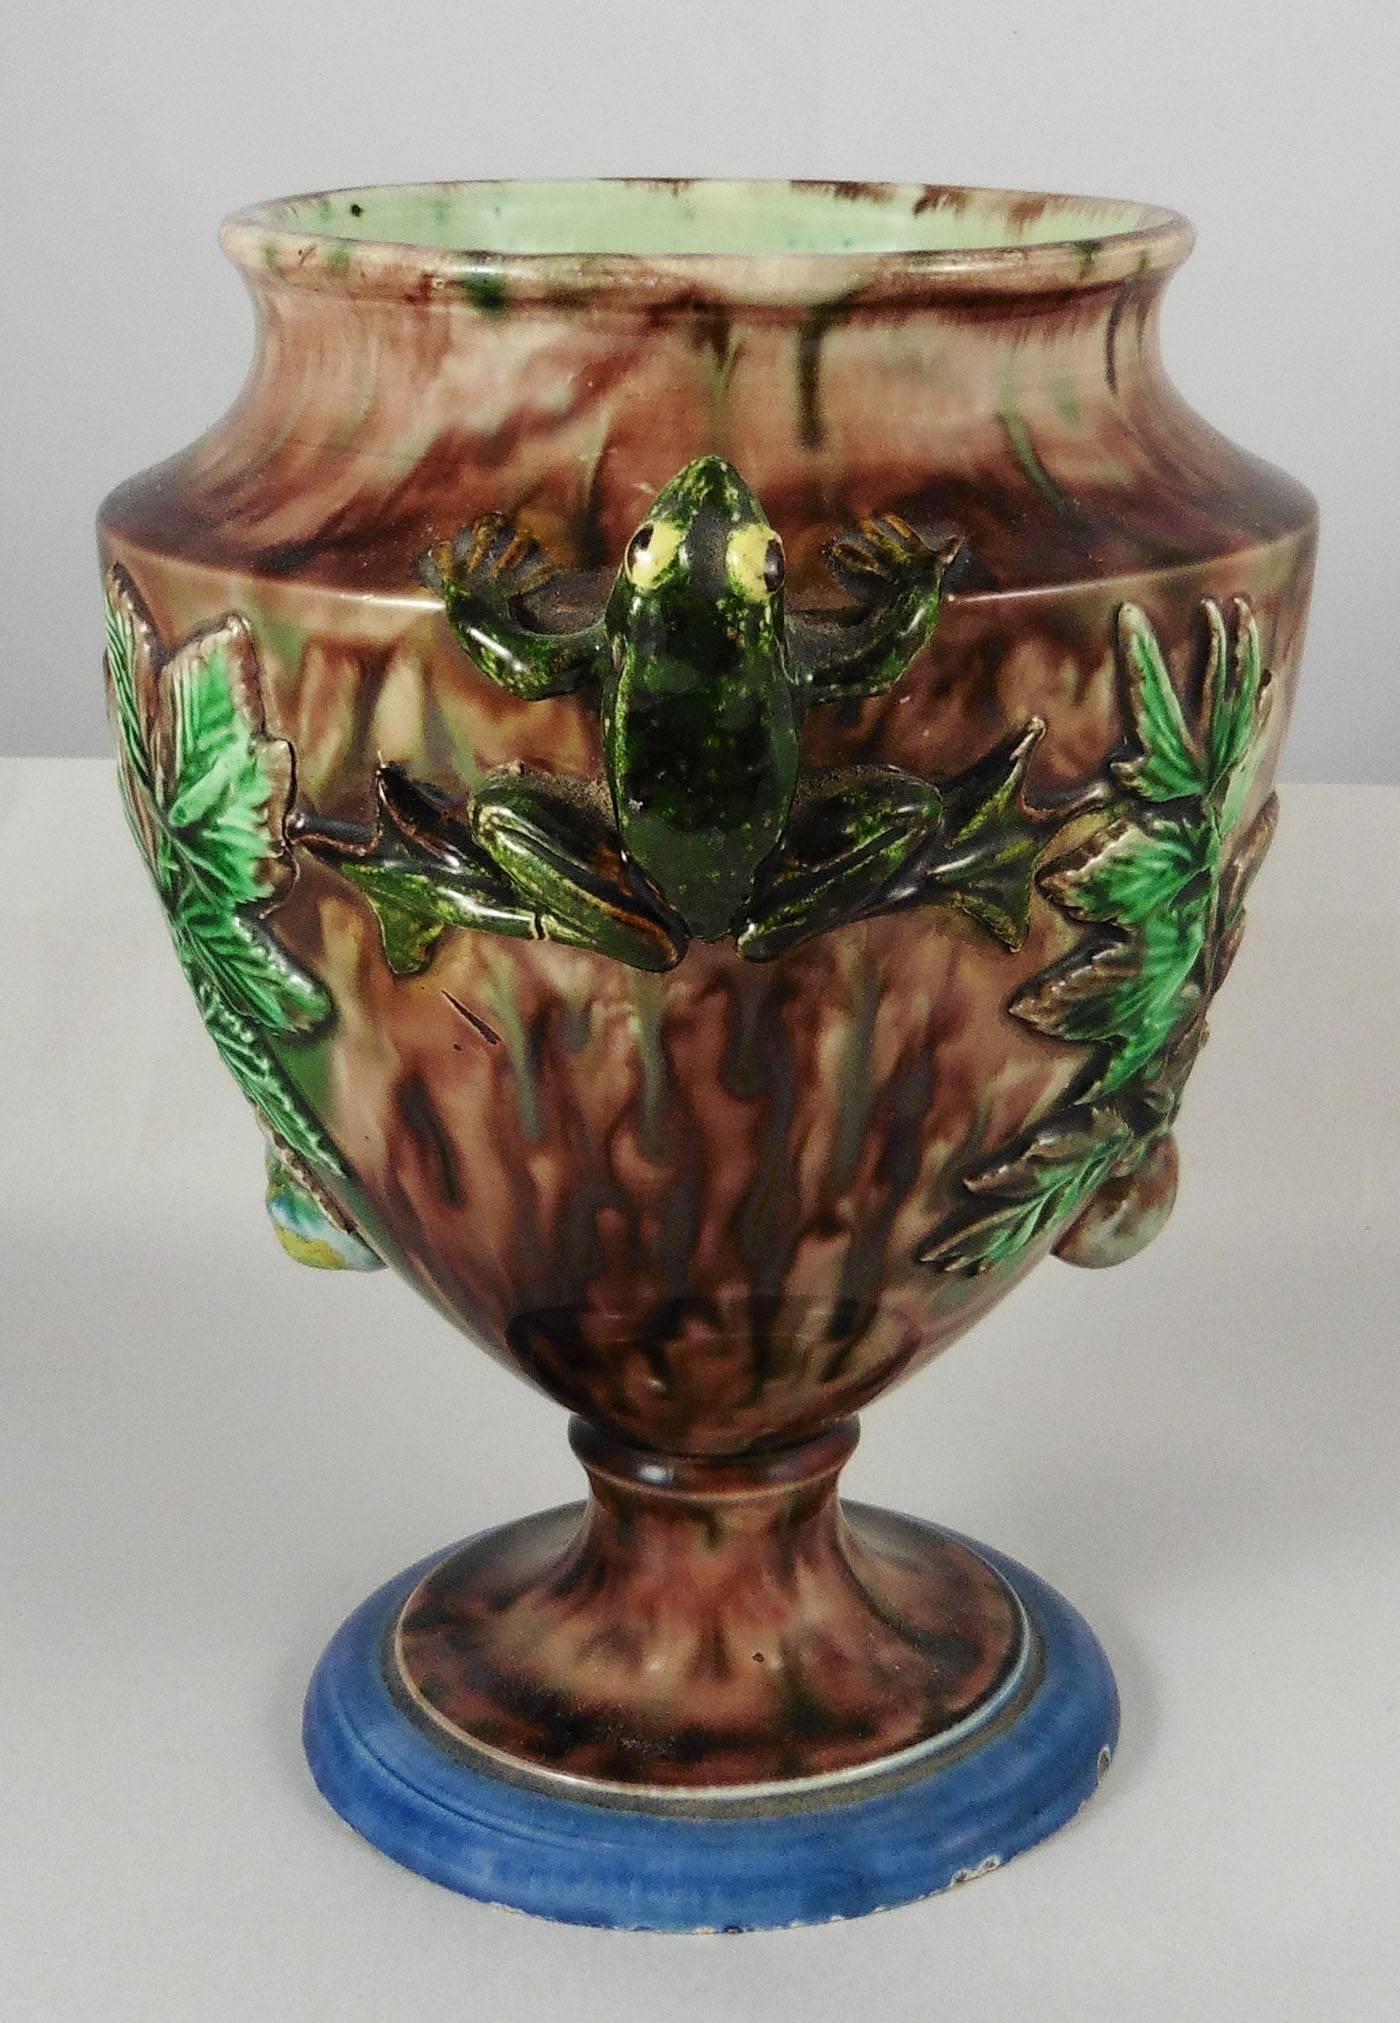 Un vase Palissy du 19ème siècle avec deux grenouilles pour les poignées, elles sont décorées de feuilles et d'escargots signés Thomas Sergent. Thomas Victor Sergent était un membre actif de l'Ecole de Paris avec d'autres céramistes. Il a fabriqué